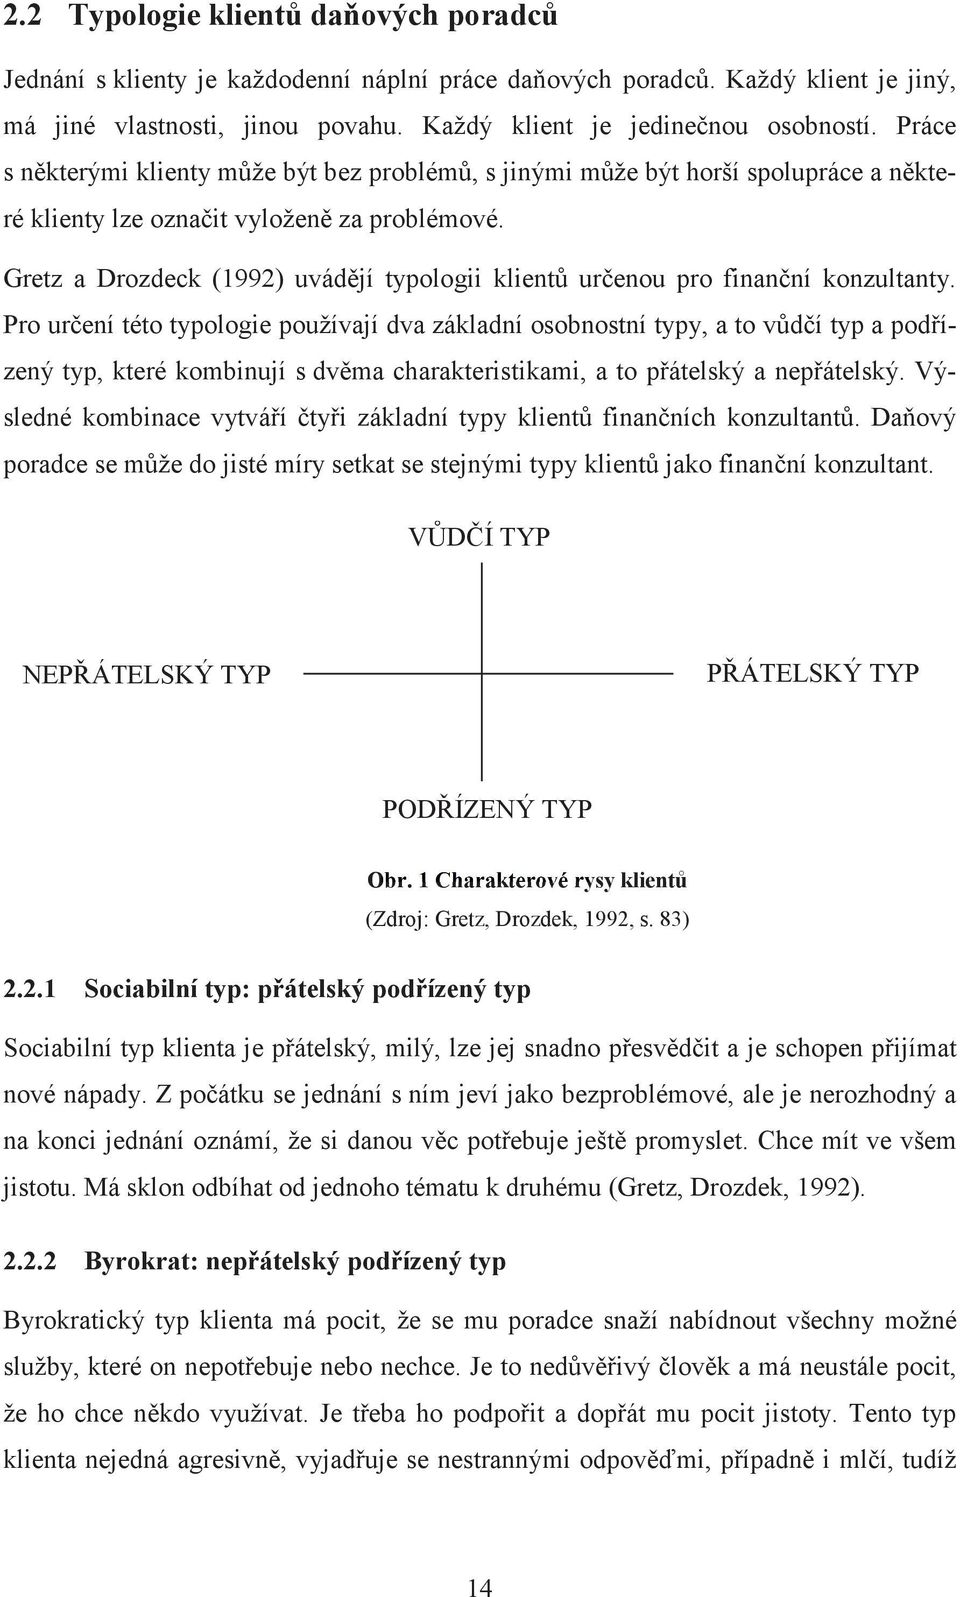 Gretz a Drozdeck (1992) uvádjí typologii klient urenou pro finanní konzultanty.